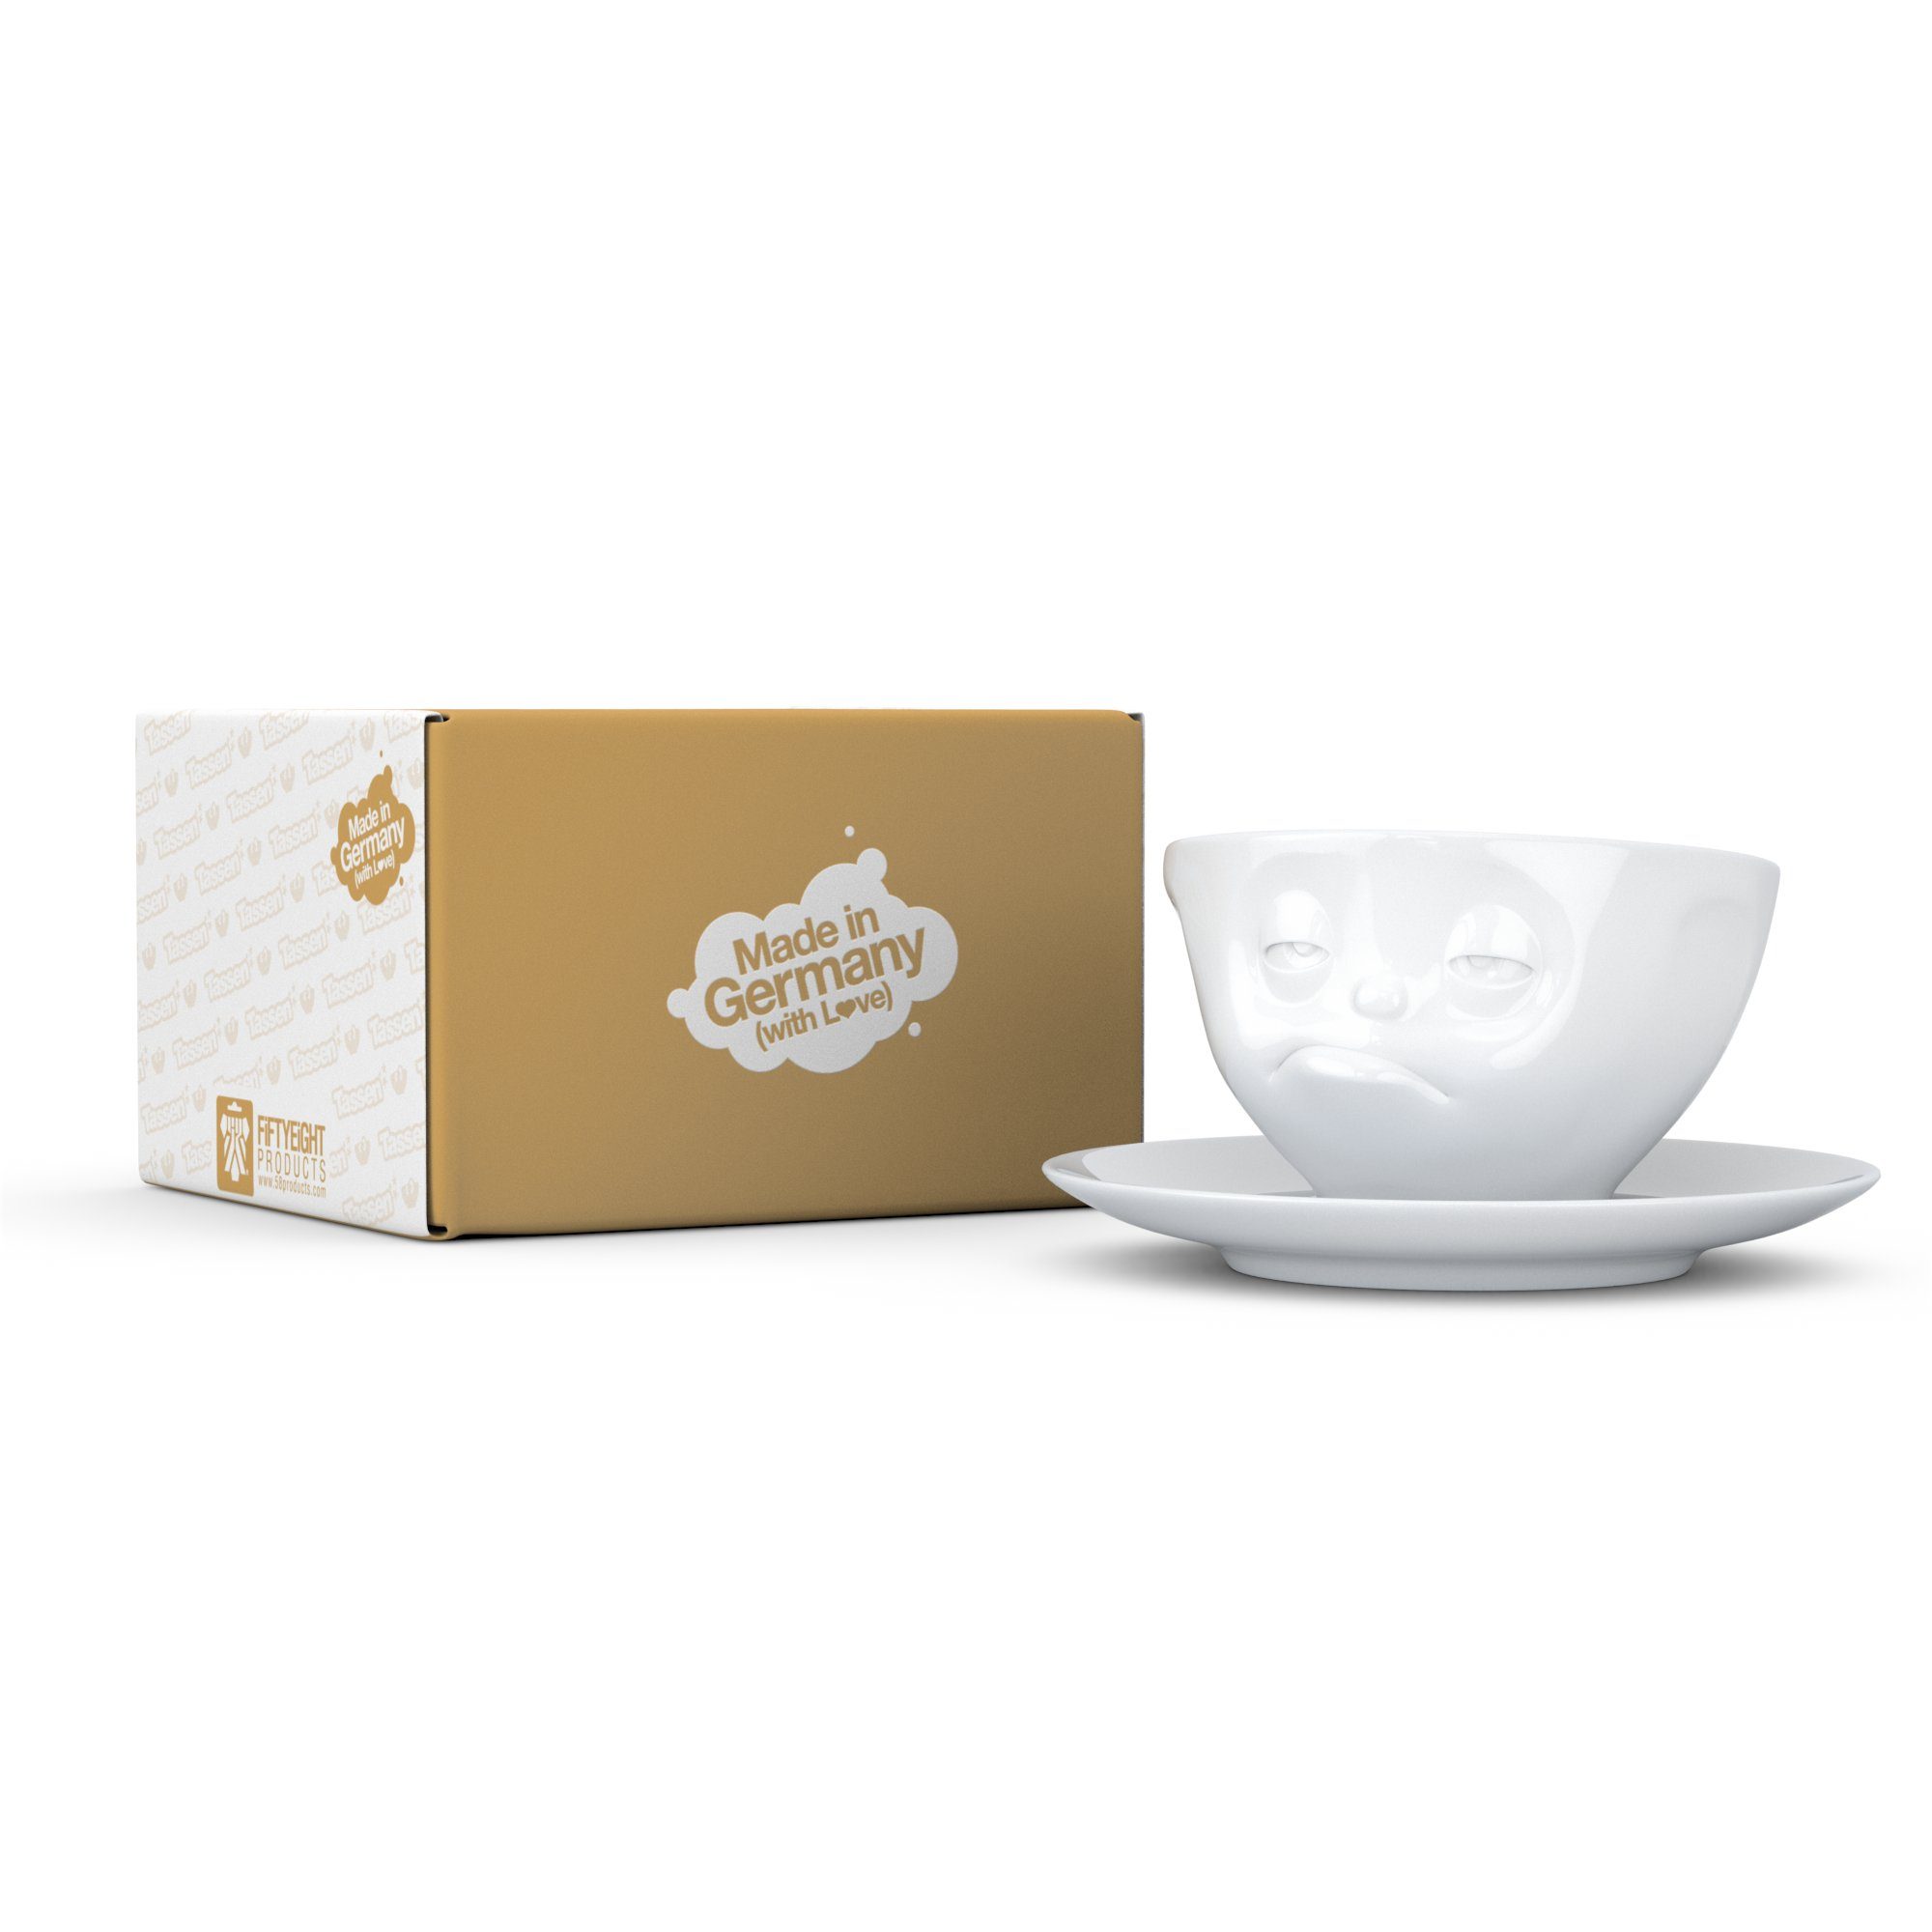 Kaffeetasse - weiß FIFTYEIGHT Tasse Weiß ml Verpennt PRODUCTS - 200 Tasse